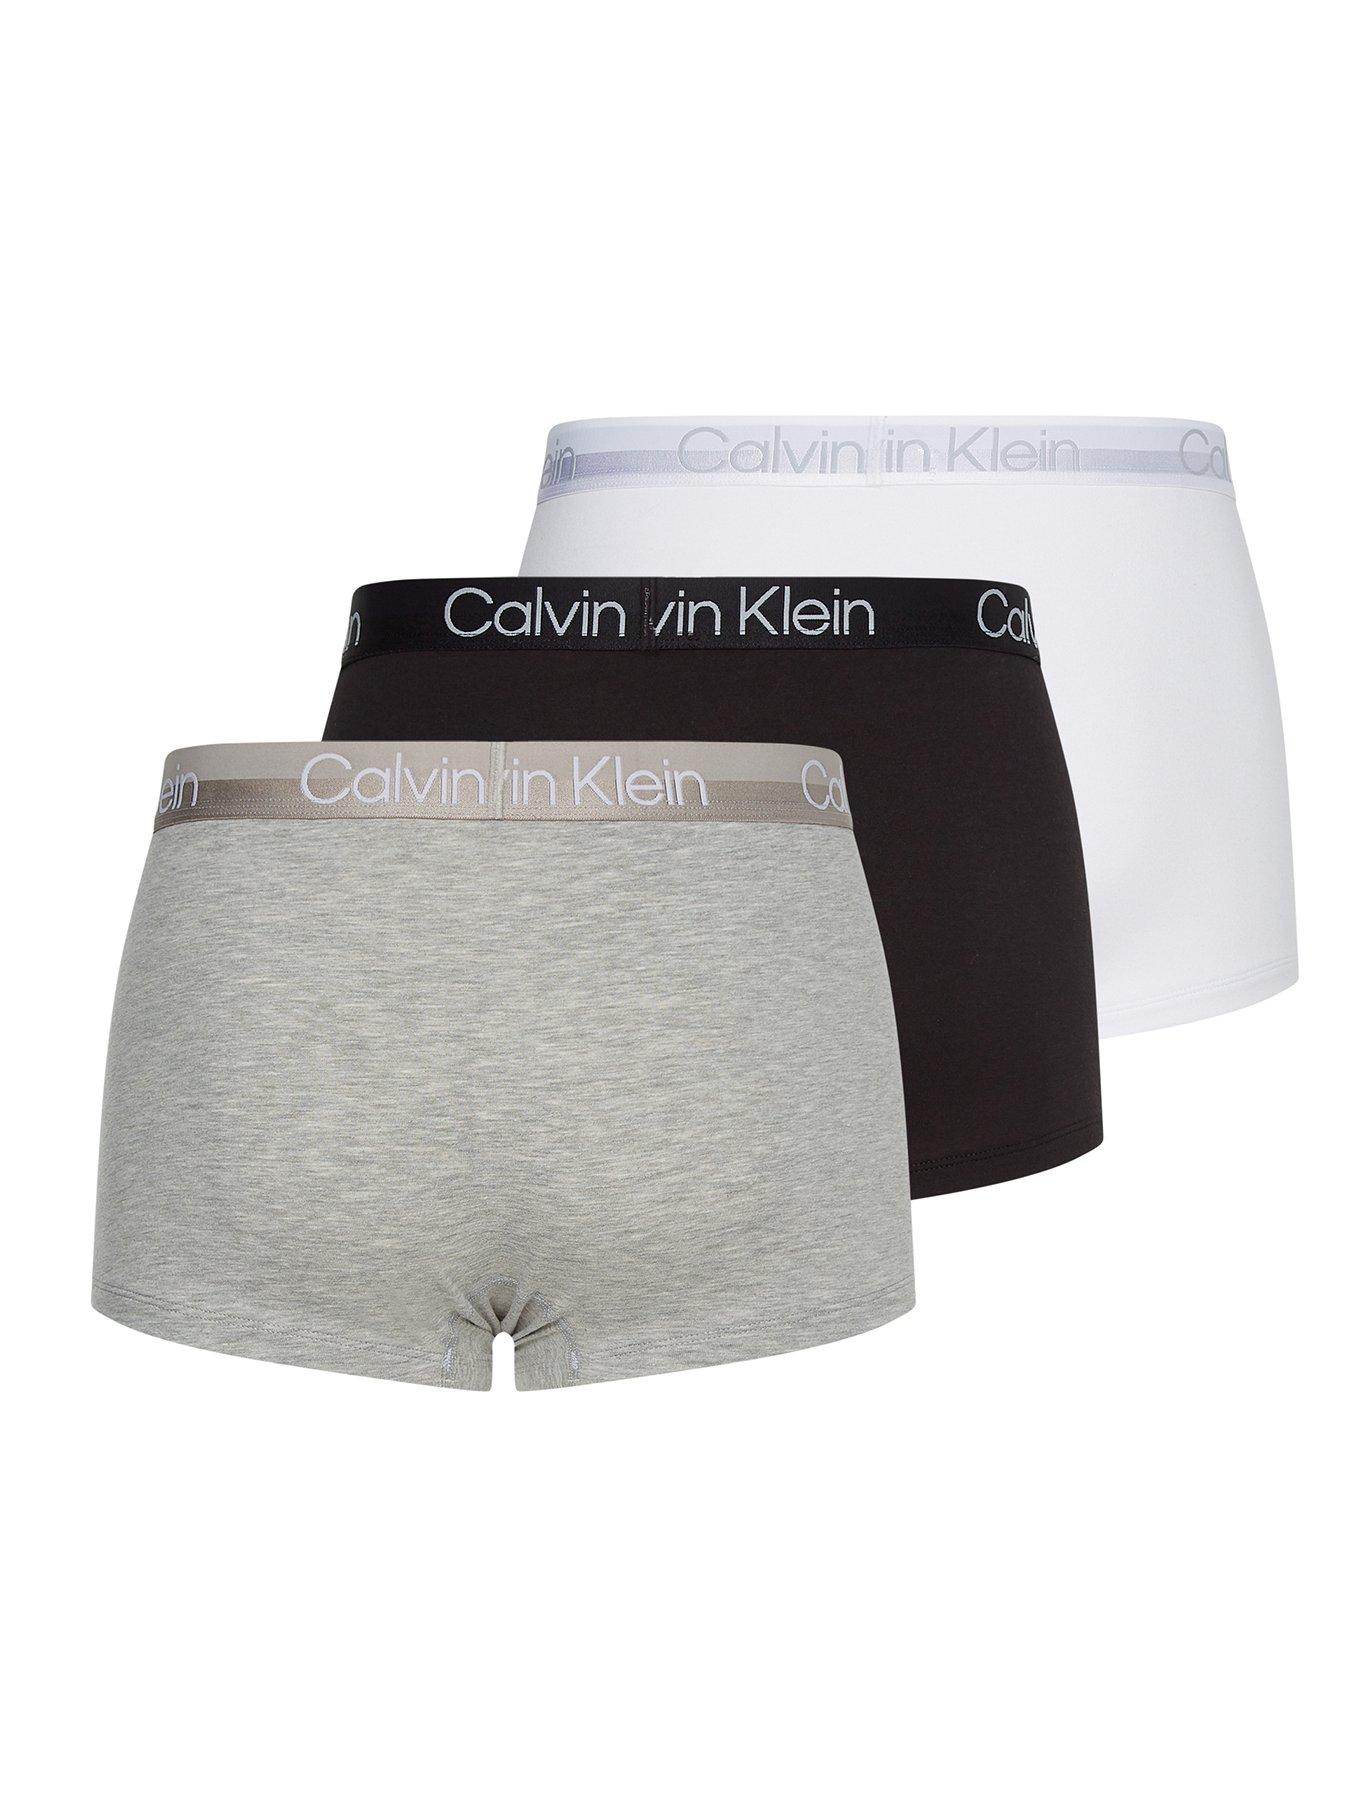 Buy Calvin Klein Boys' Modern Cotton Brief Underwear 6 Pack, Multi Stripe,  Large at